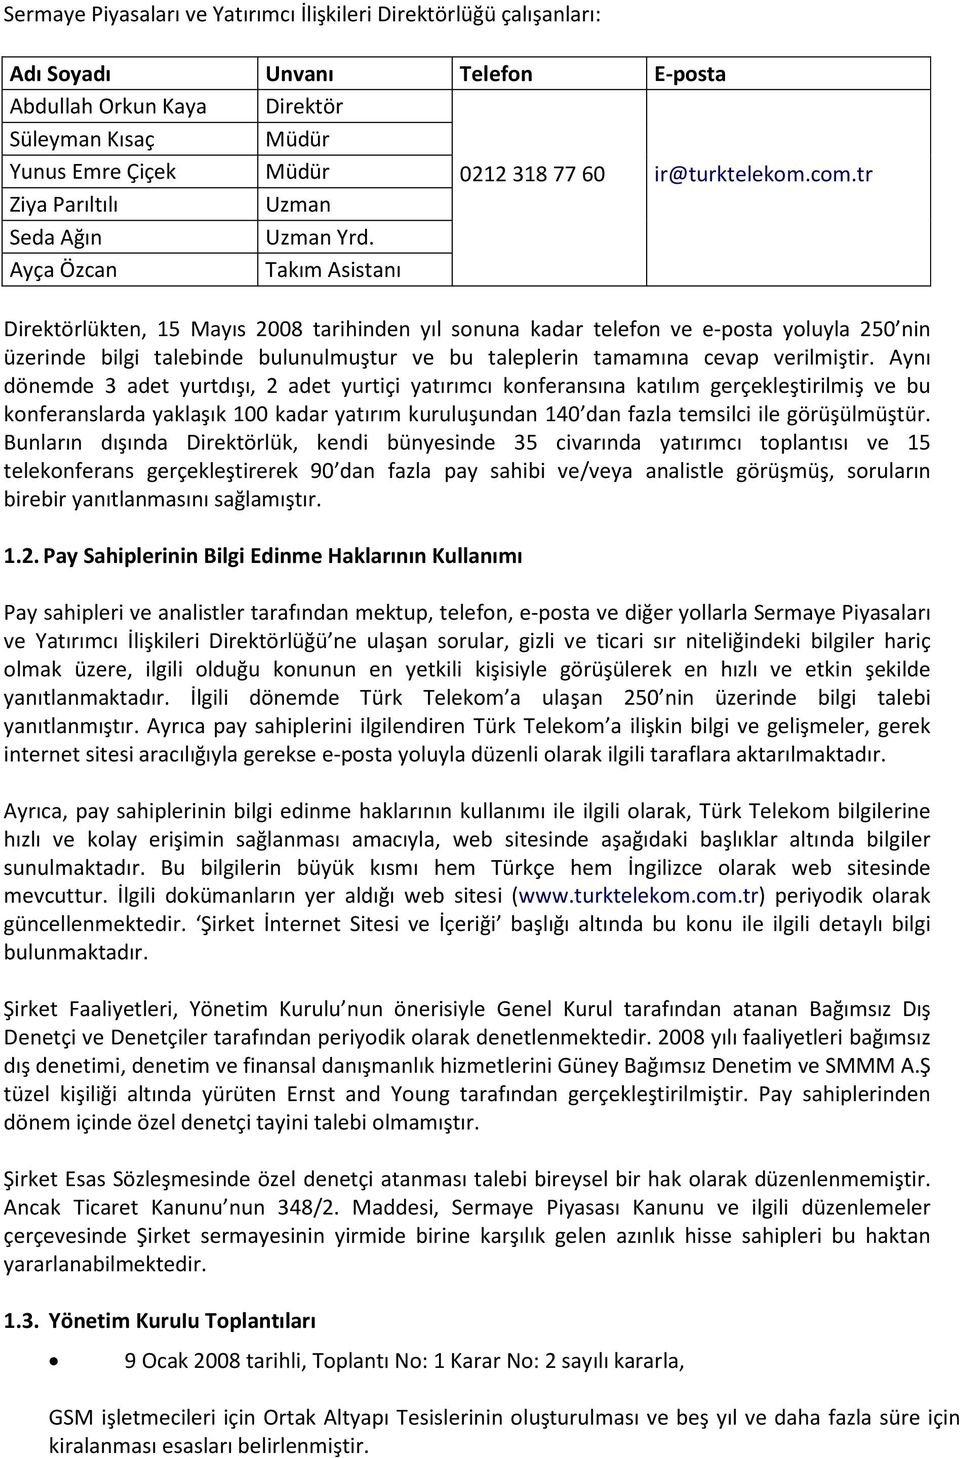 Ayça Özcan Takım Asistanı Direktörlükten, 15 Mayıs 2008 tarihinden yıl sonuna kadar telefon ve e-posta yoluyla 250 nin üzerinde bilgi talebinde bulunulmuştur ve bu taleplerin tamamına cevap